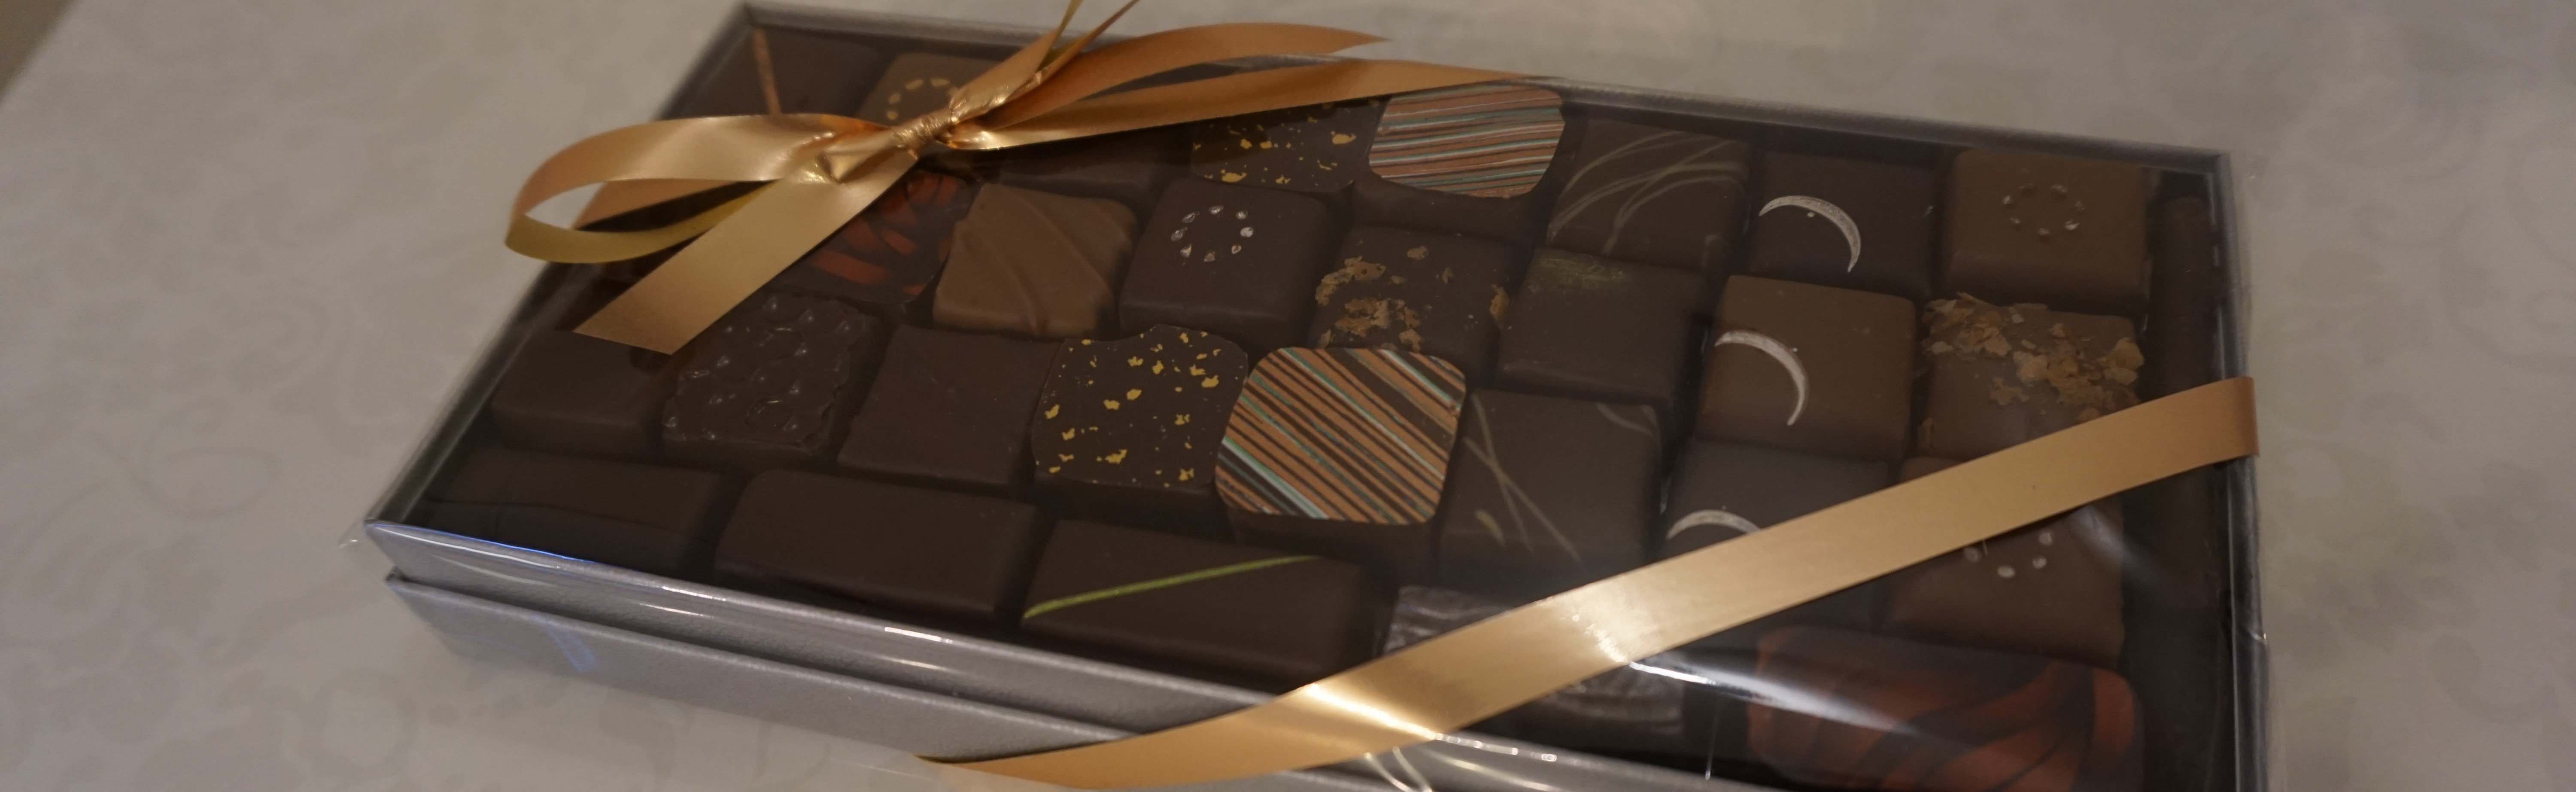 Boîte de Chocolats